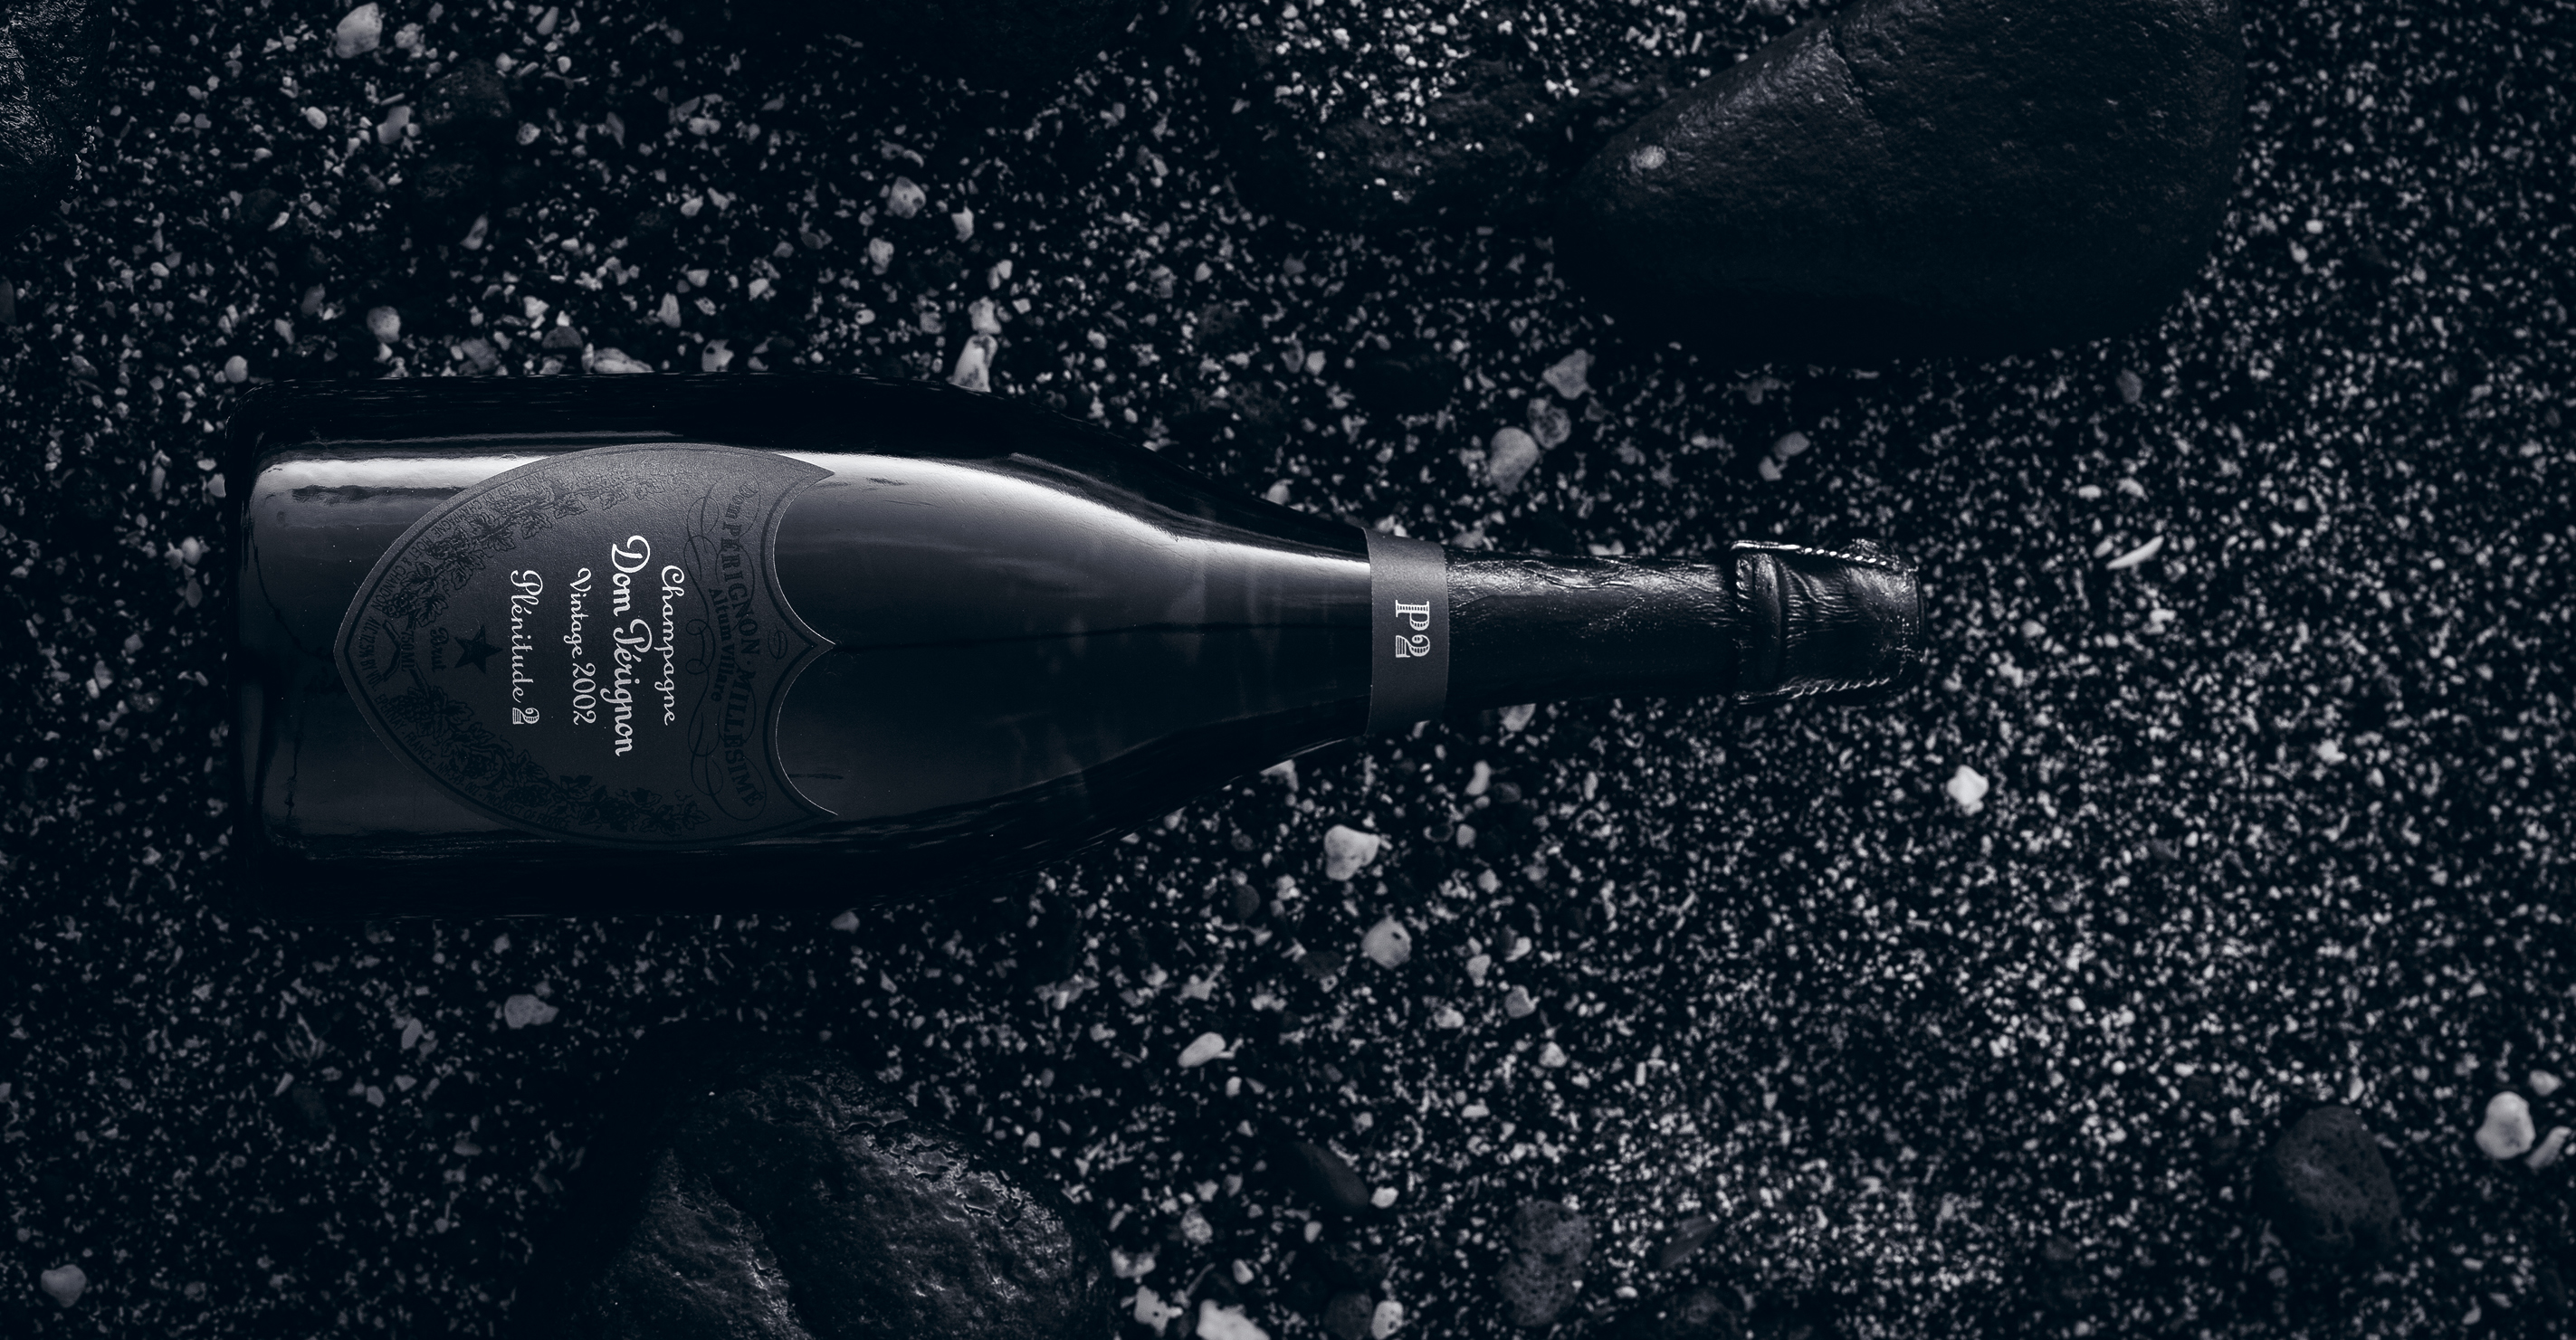 Dom Perignon P2 2002 (750ML), Sparkling, Champagne Blend